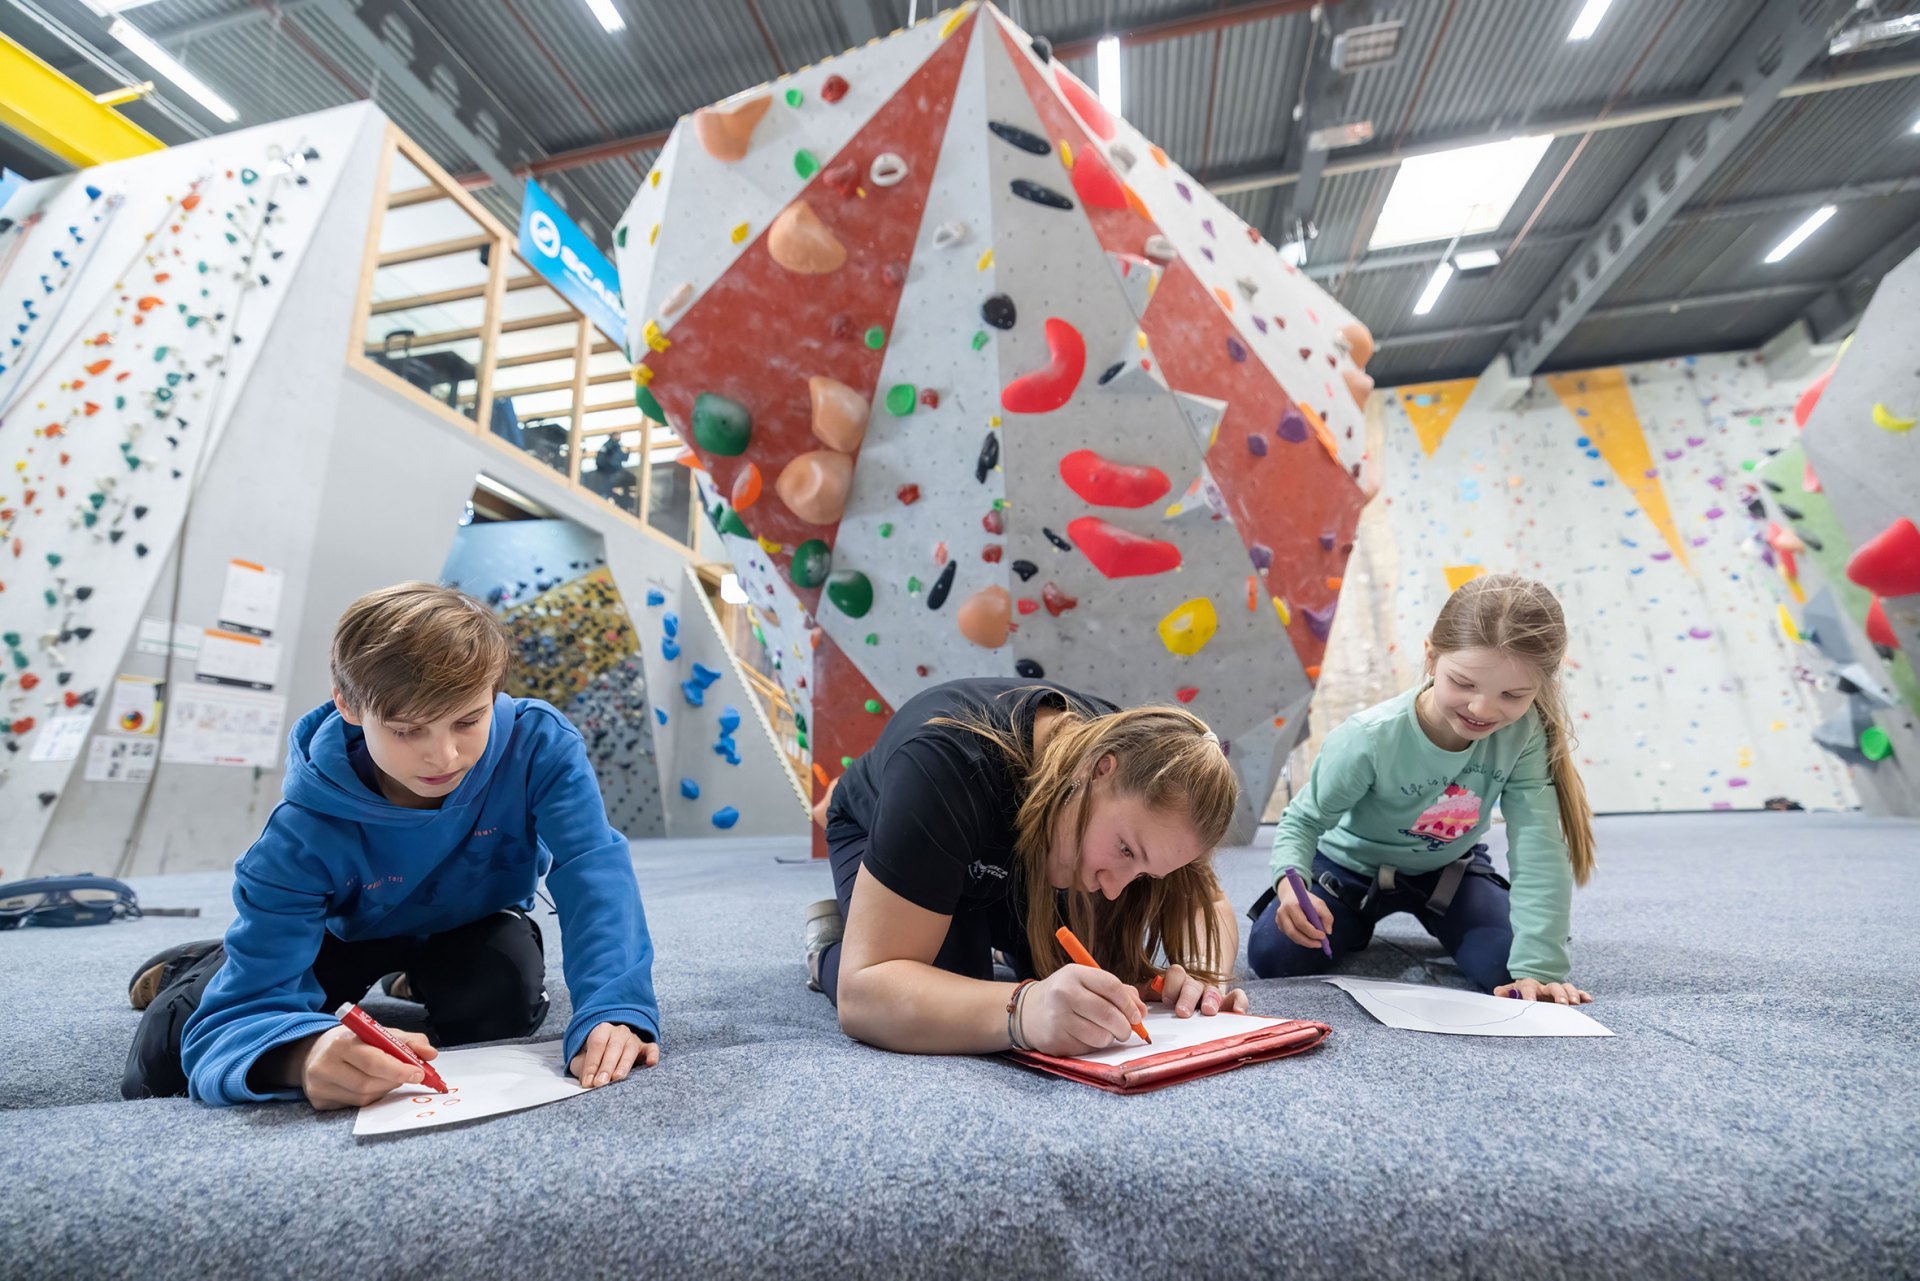 Bambini e giovani sono in grado di pianificare posizioni e movimenti di arrampicata, così
come di percepire i movimenti necessari.